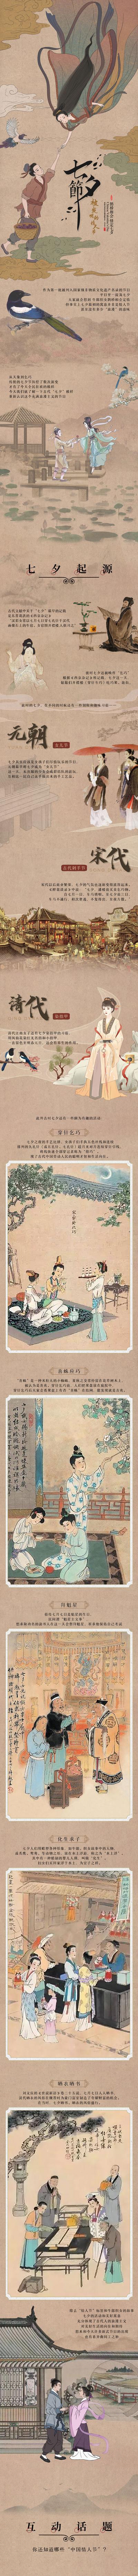 【南门网】专题设计 中国传统节日 七夕节 起源 来源 历史 做旧 古风 复古 插画